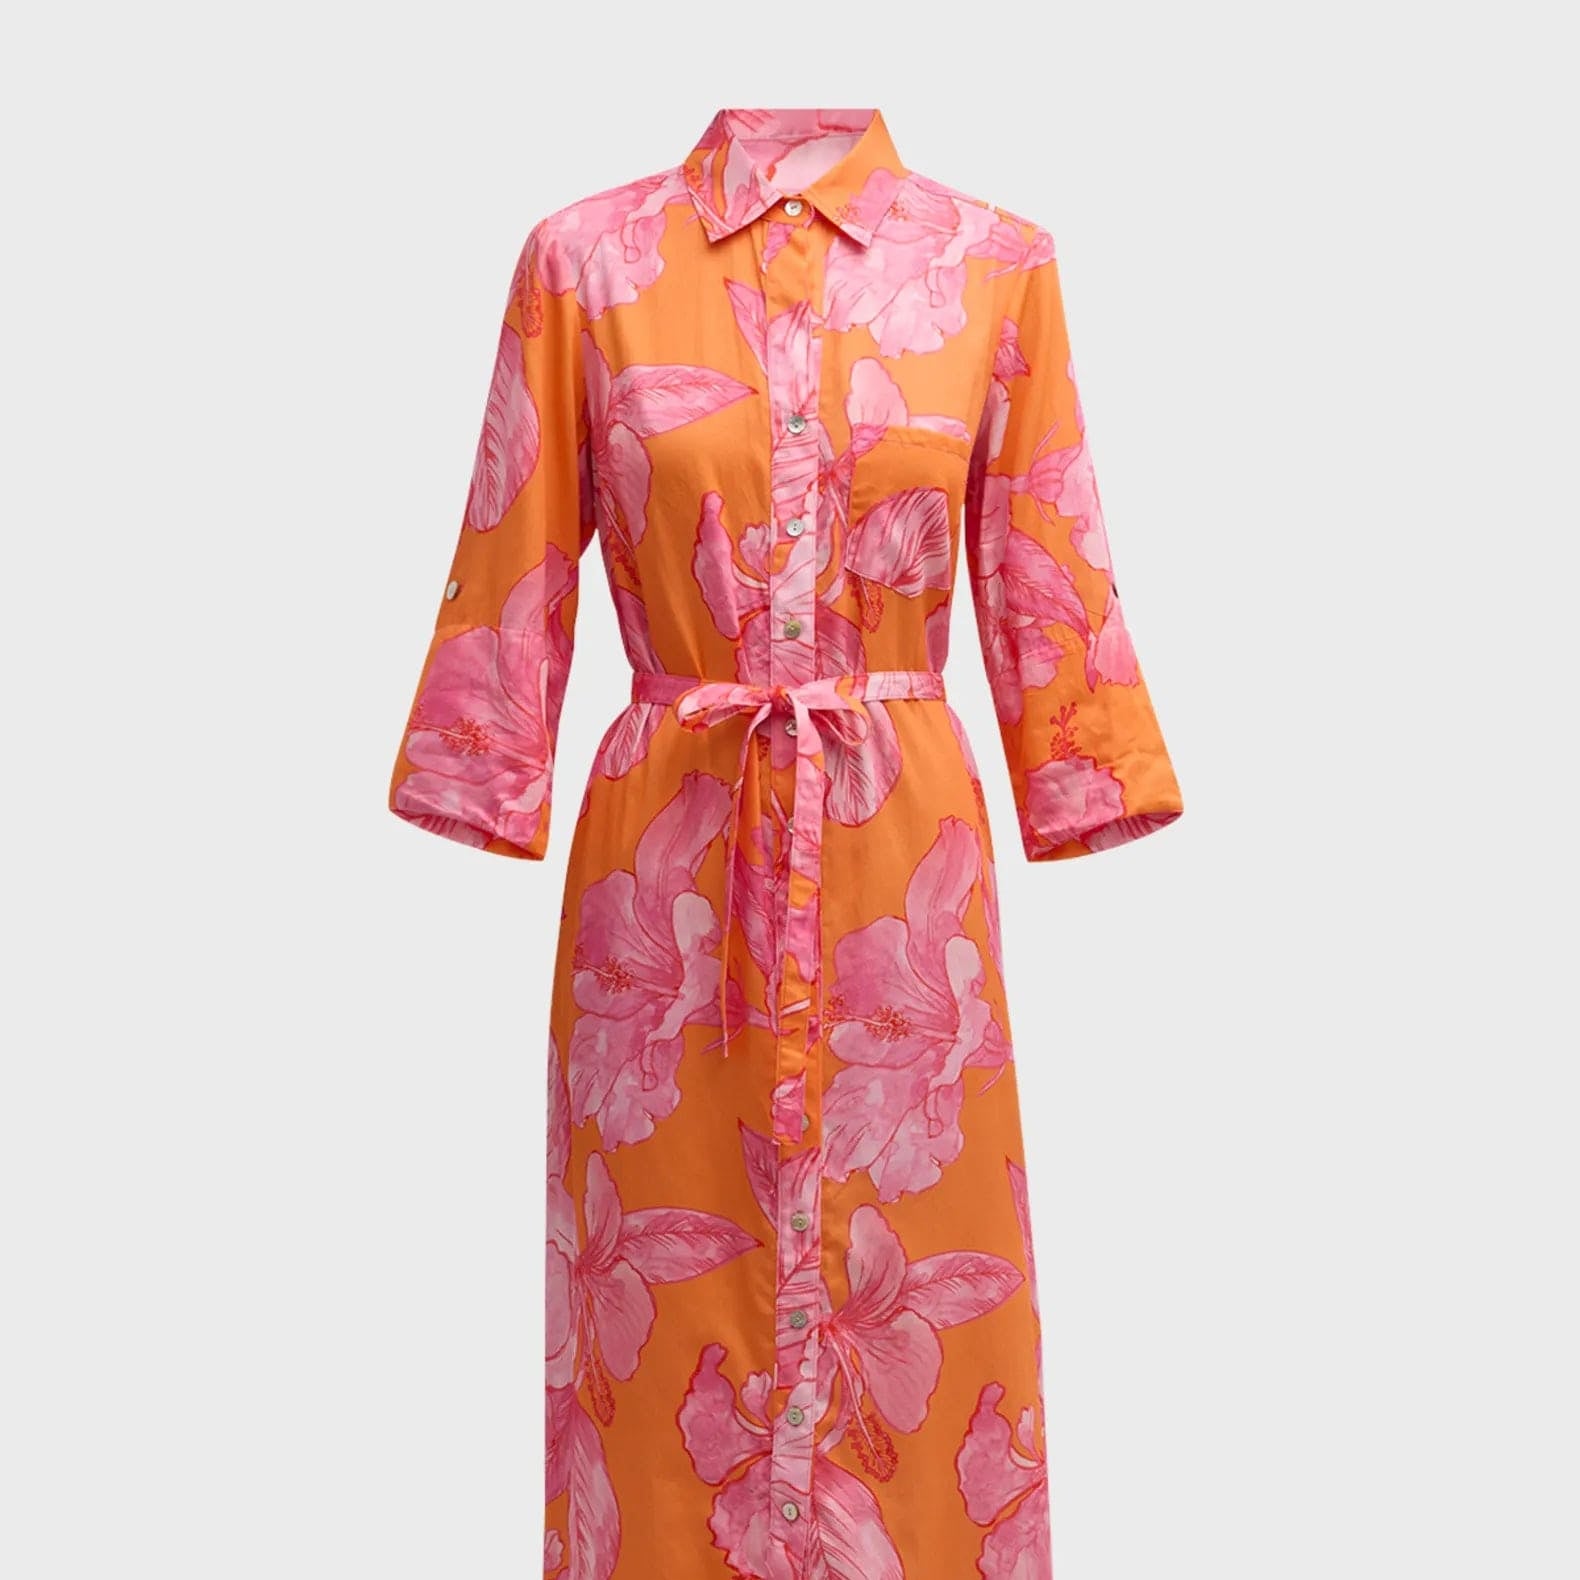 Finley Shirts Women's Dresses Orange/Pink / XS Finley Long Alex Shirtdress